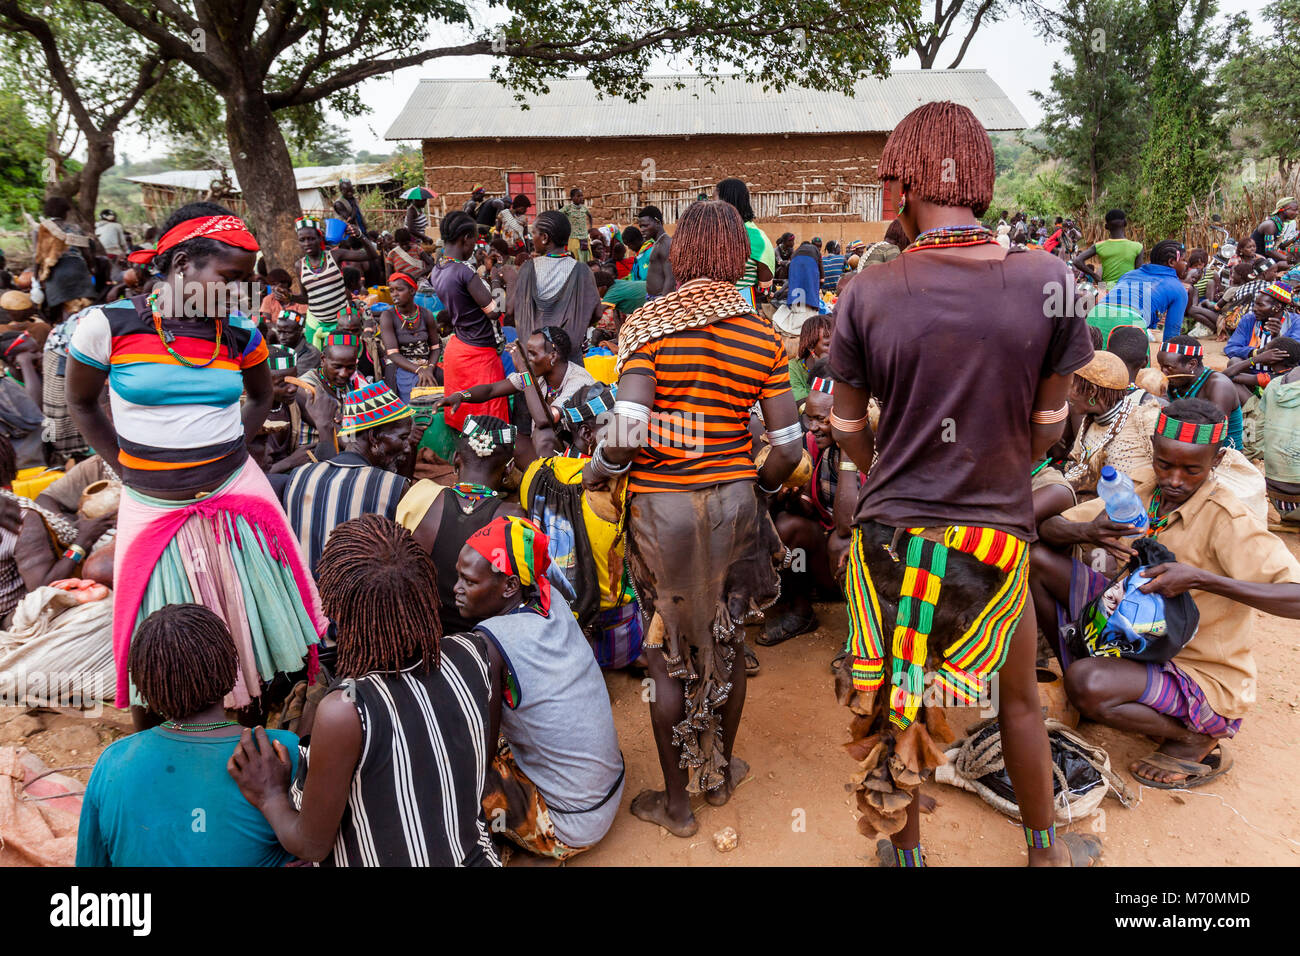 Hamer et Banna People Socializing At Le Alduba Marché Tribal, près de Keyafer, vallée de l'Omo, Ethiopie Banque D'Images